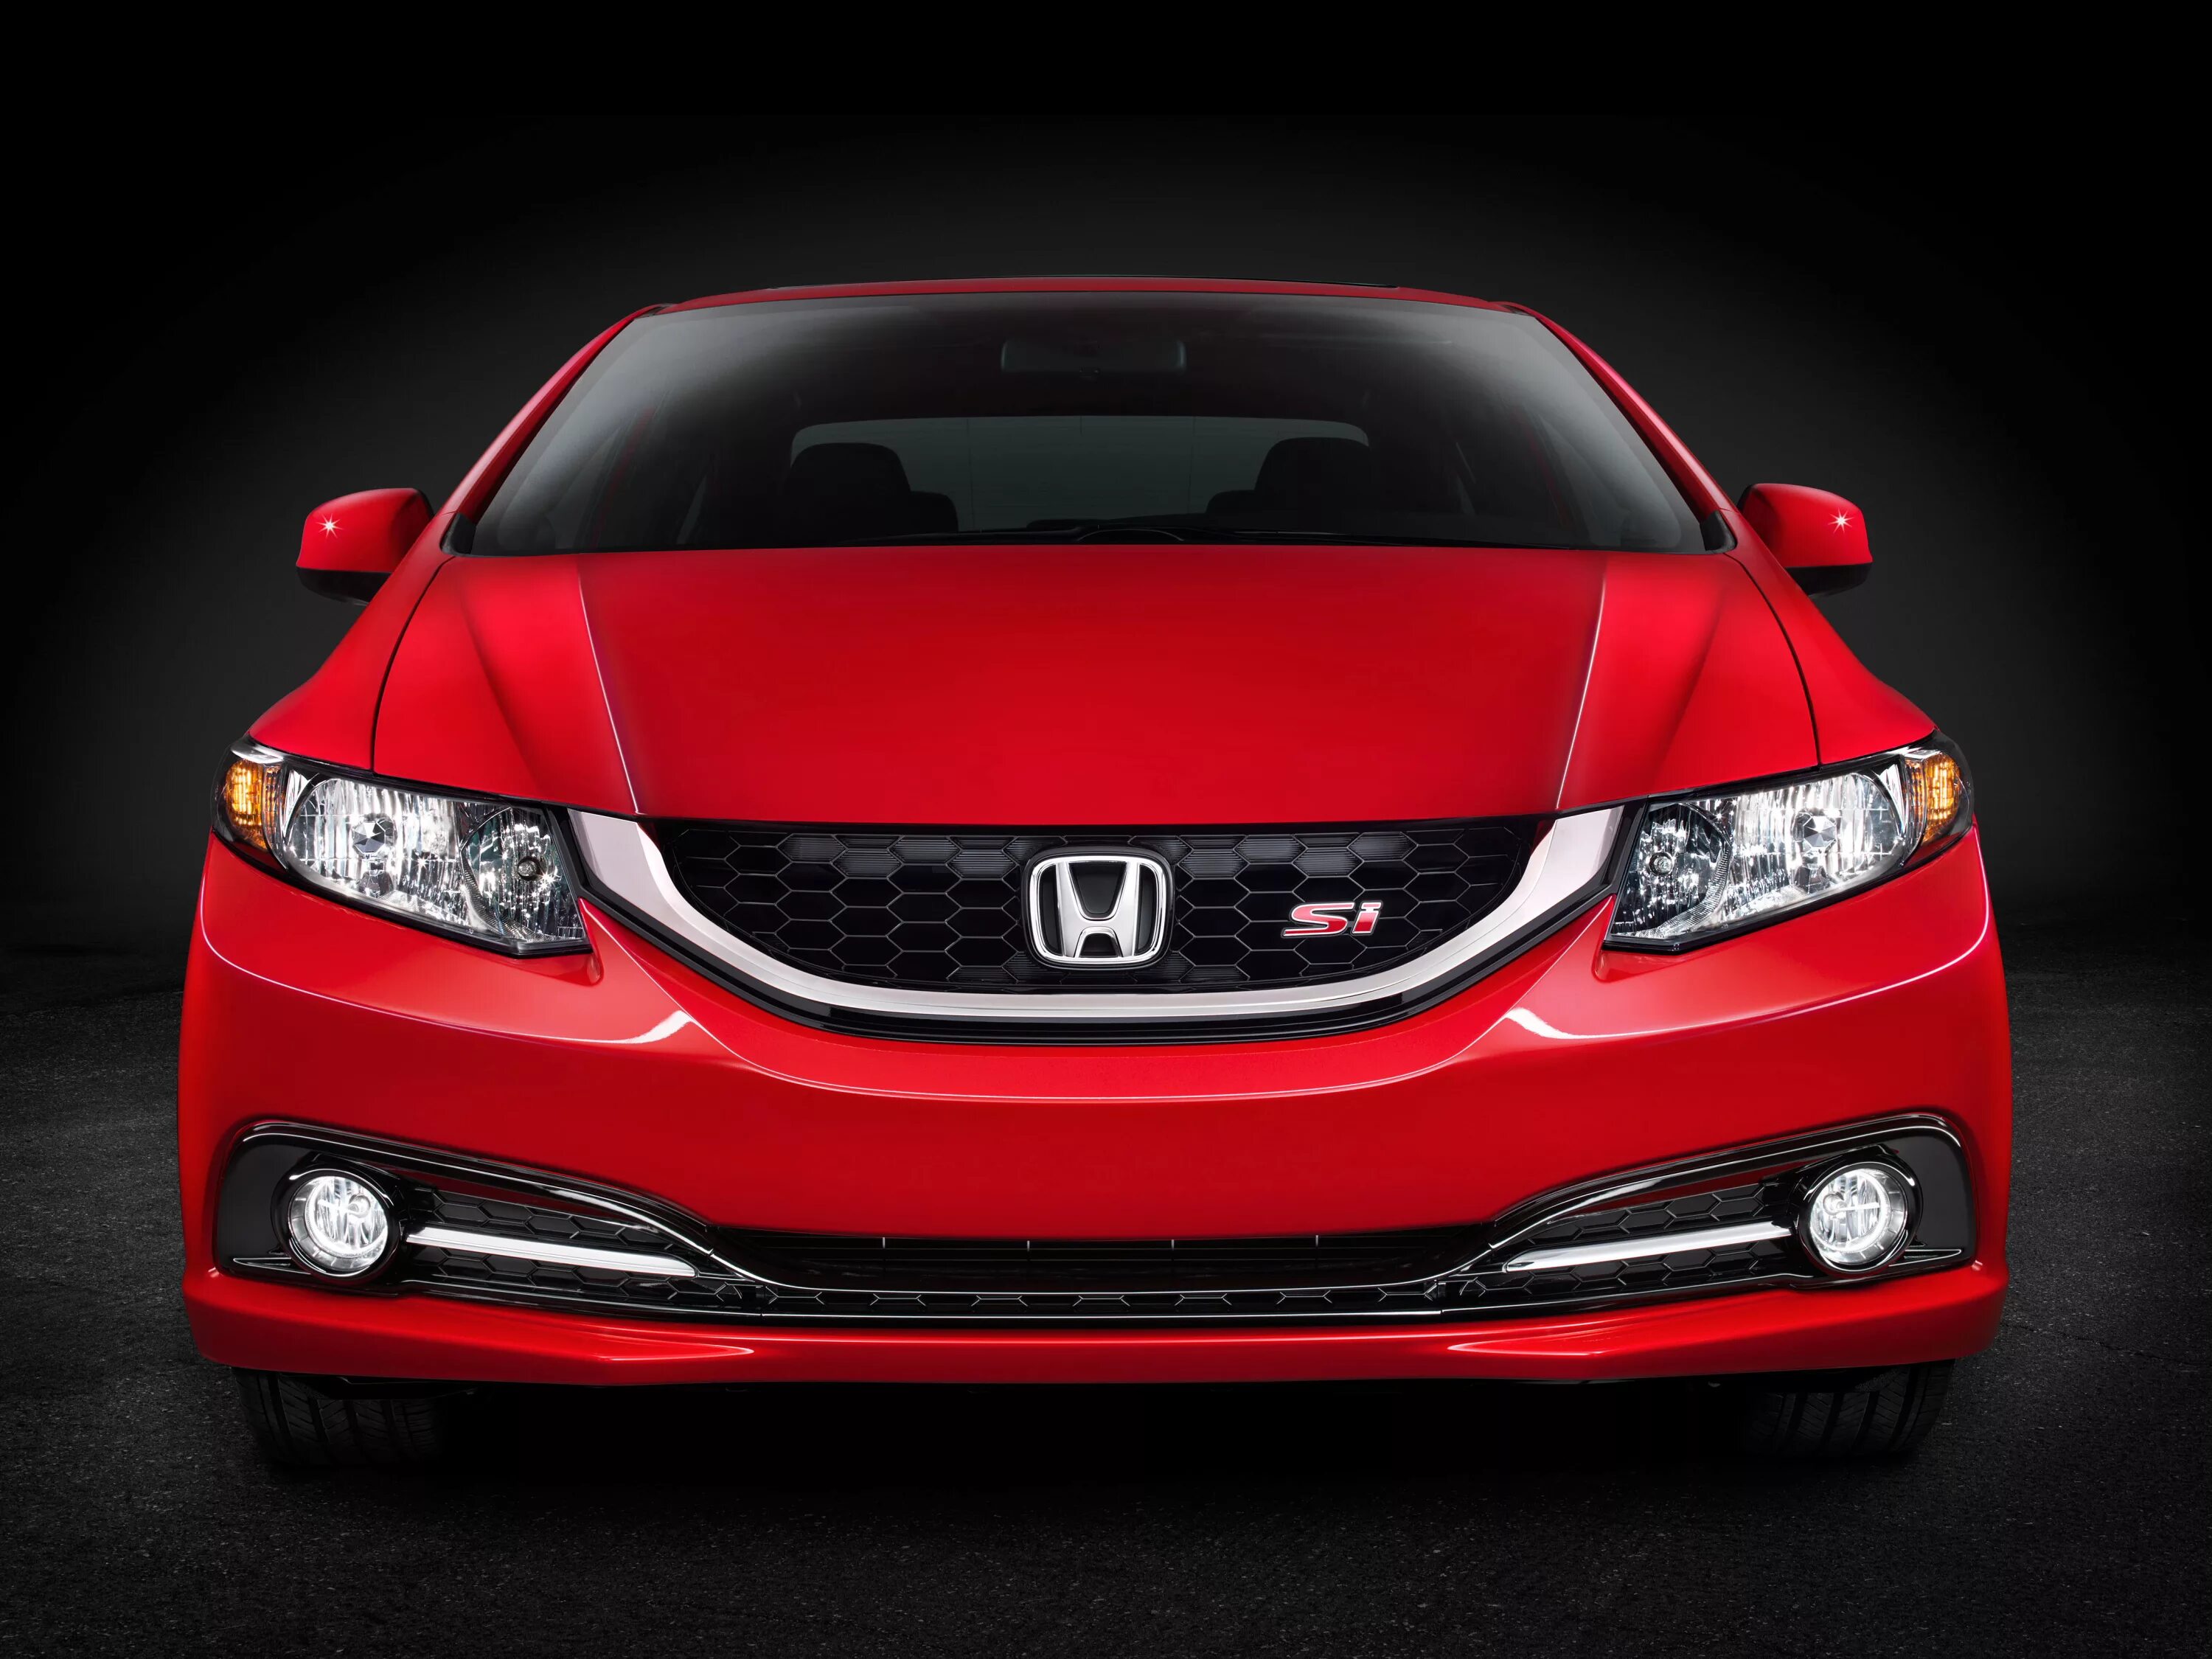 Honda Civic 2015 седан. Honda Civic 2014 седан. Хонда Цивик 2013 седан. 2013 Honda Civic si.